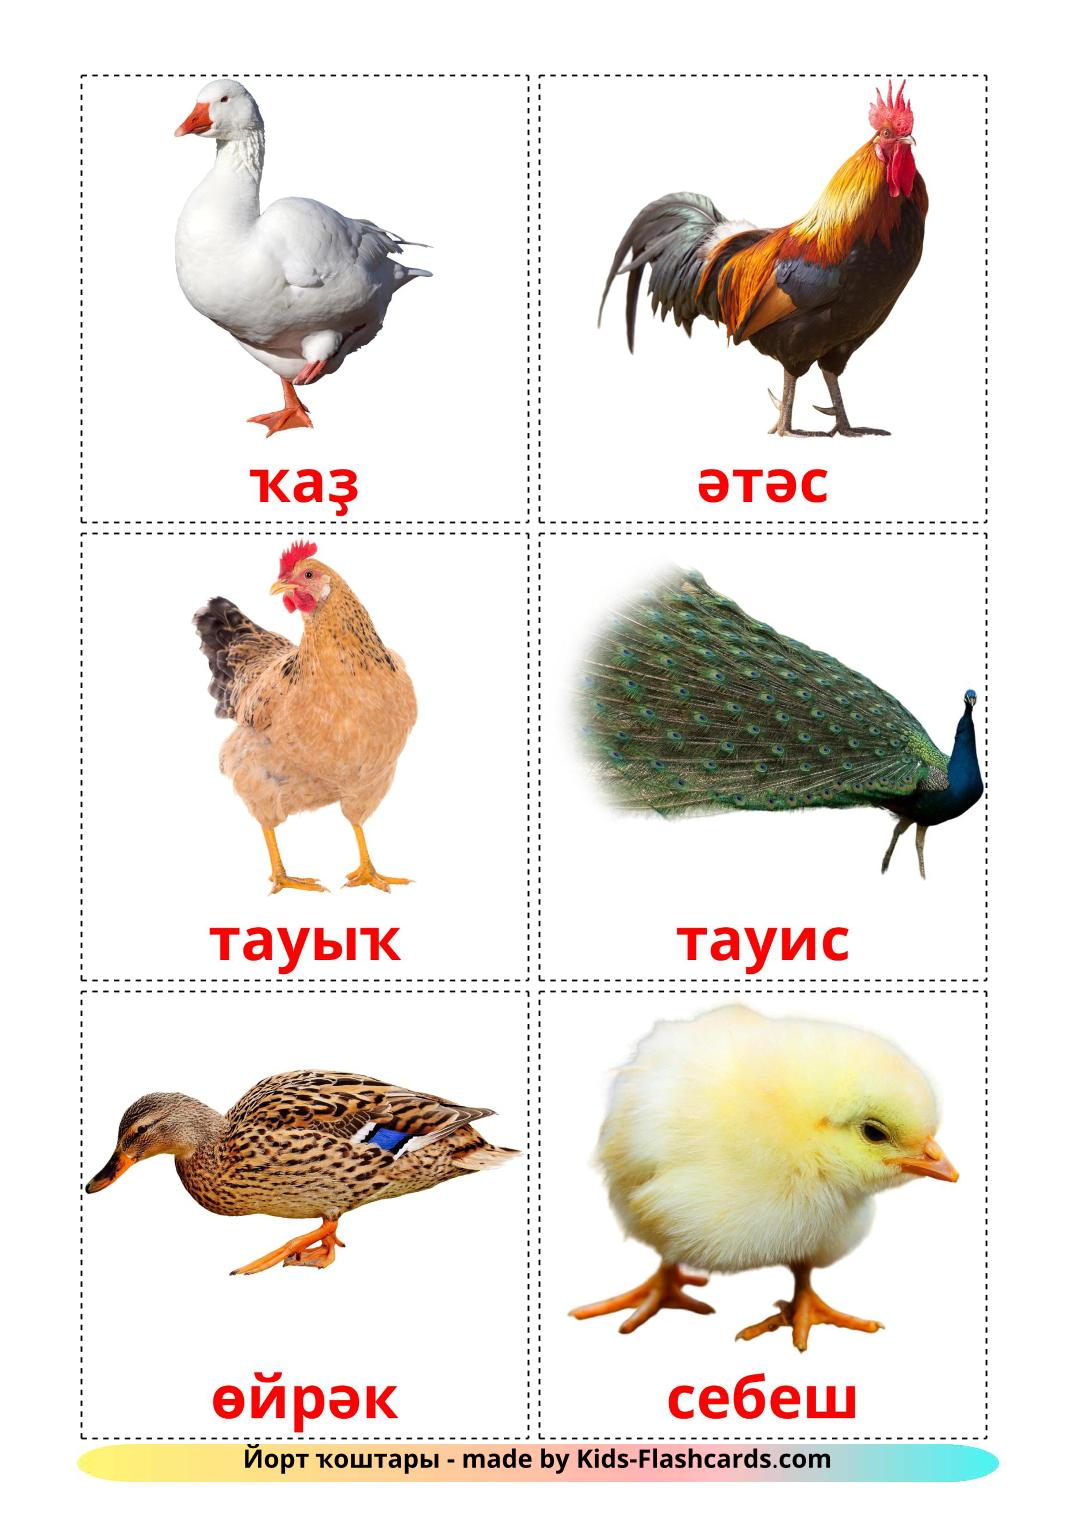 Птицы в деревне - 11 Карточек Домана на башкирском